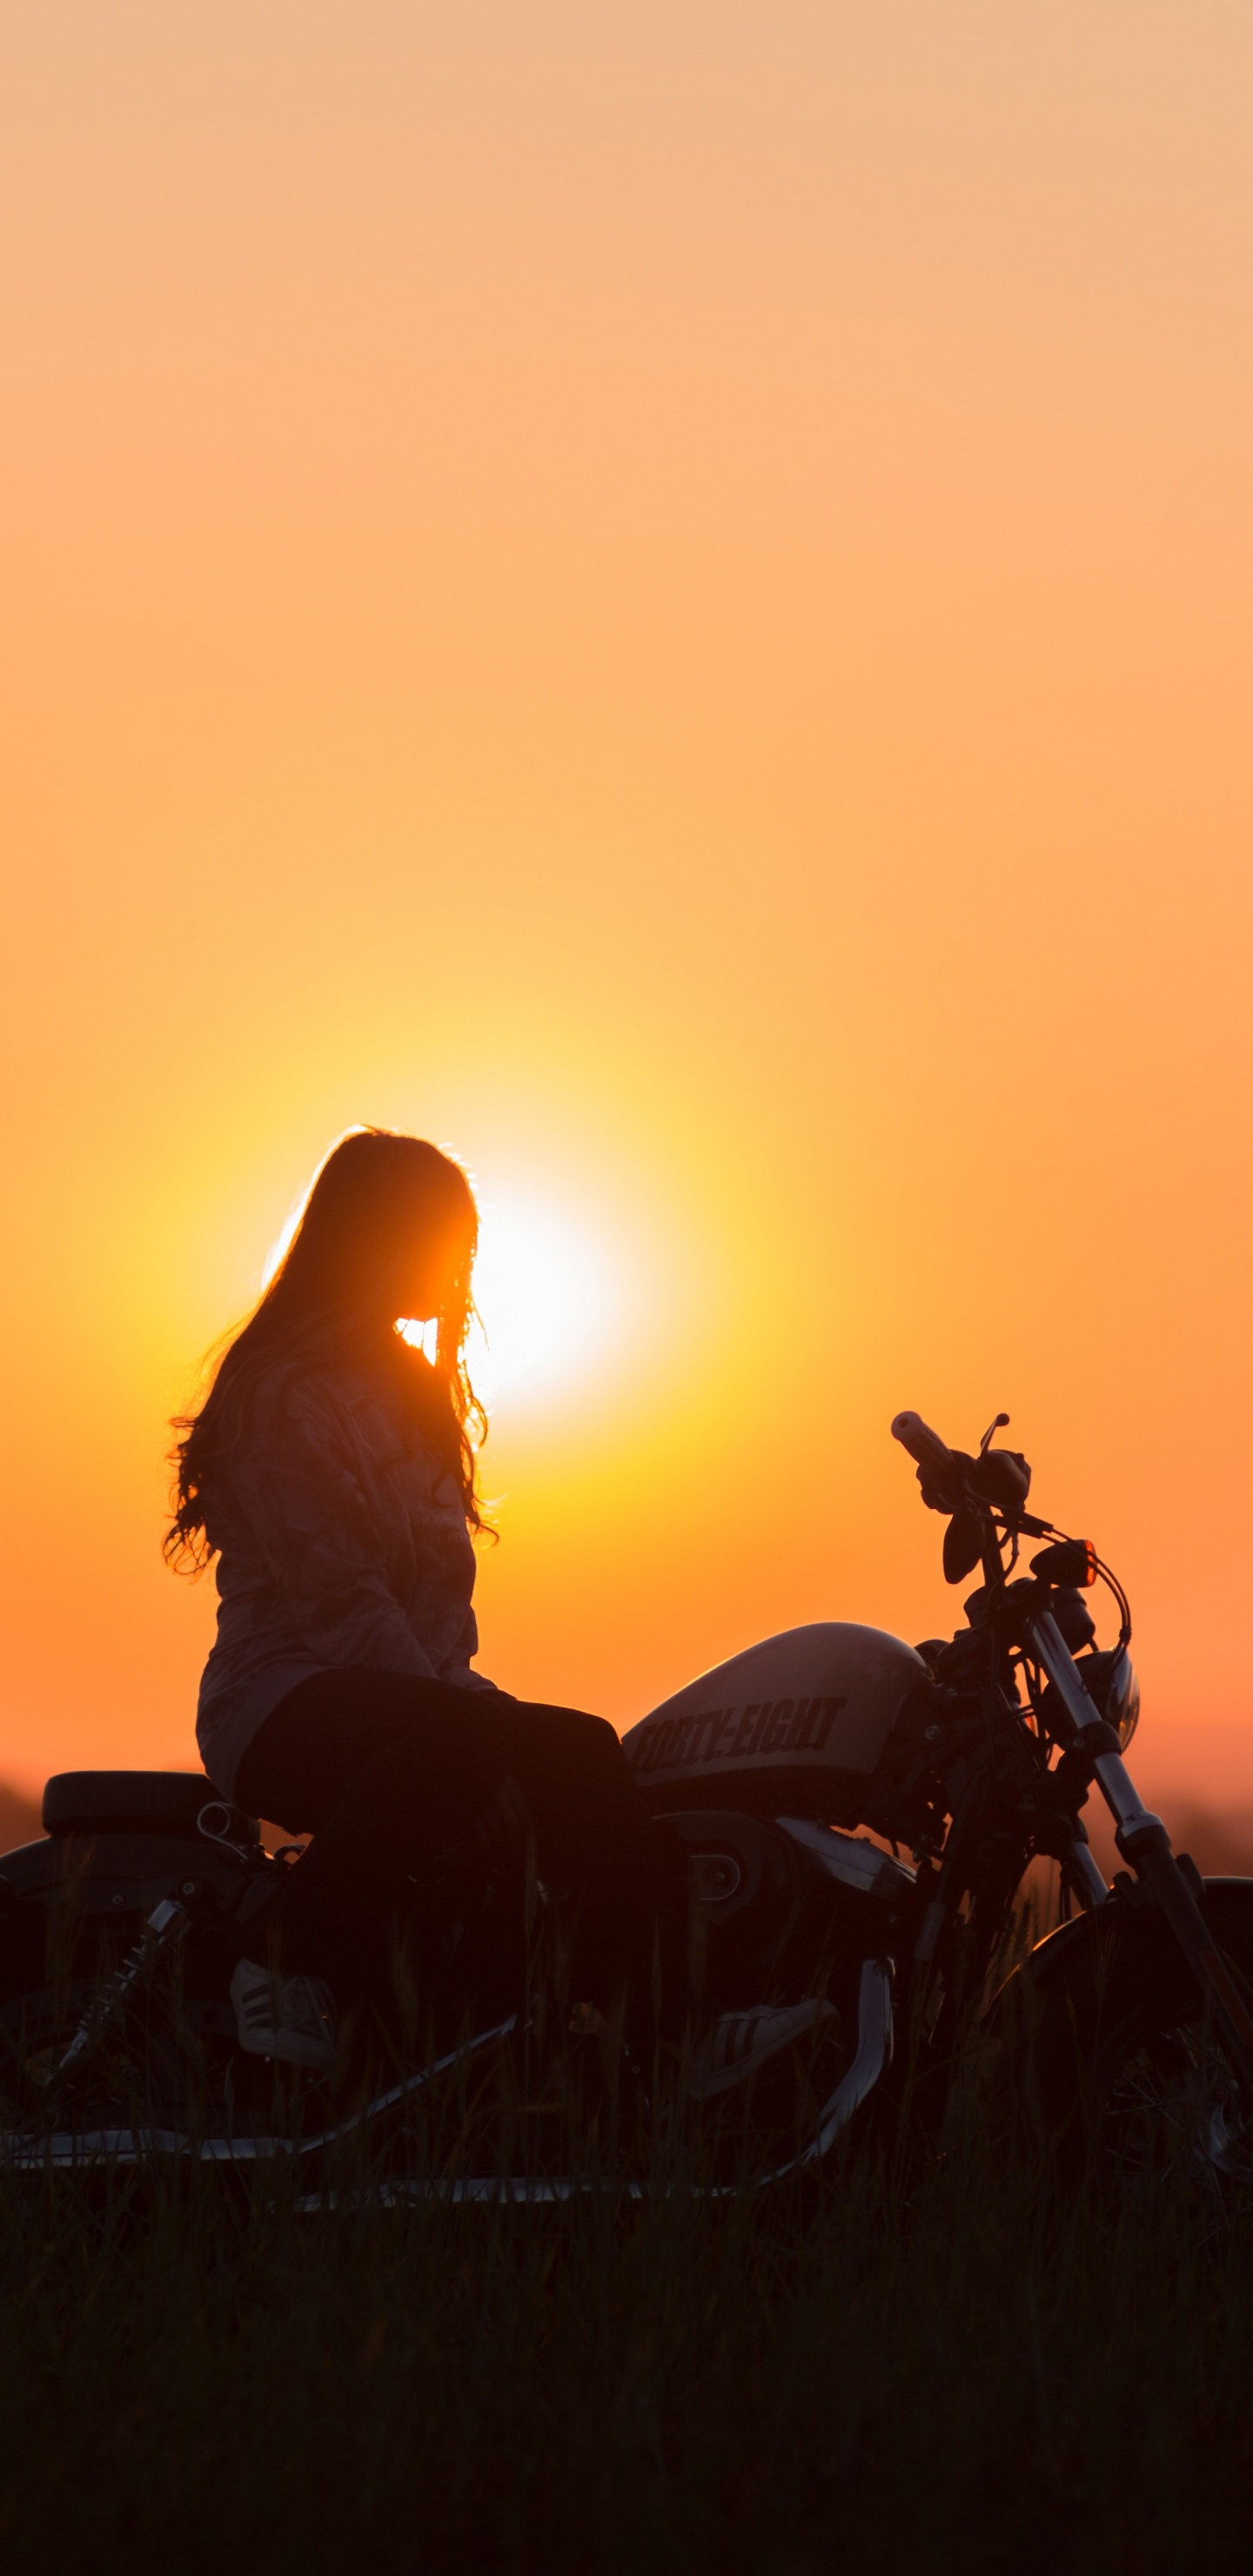 Silueta de Hombre en Motocicleta Durante la Puesta de Sol. Wallpaper in 1440x2960 Resolution